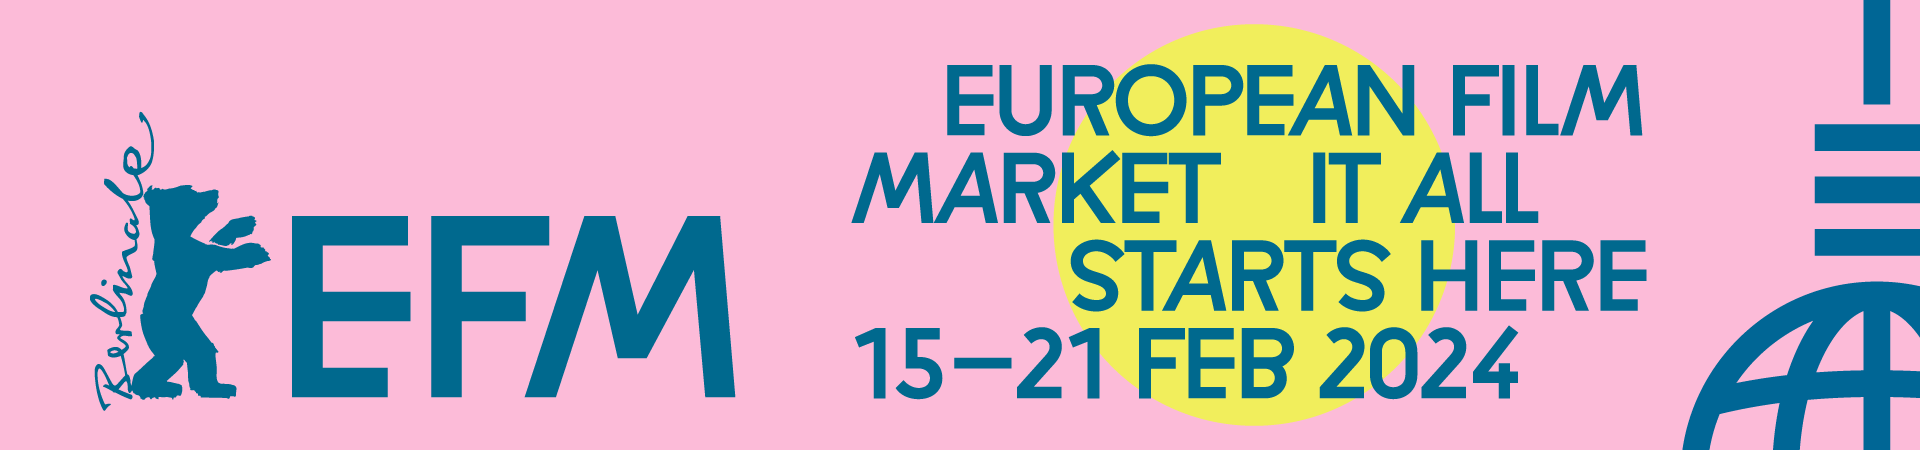 Banner Ad European Film Market